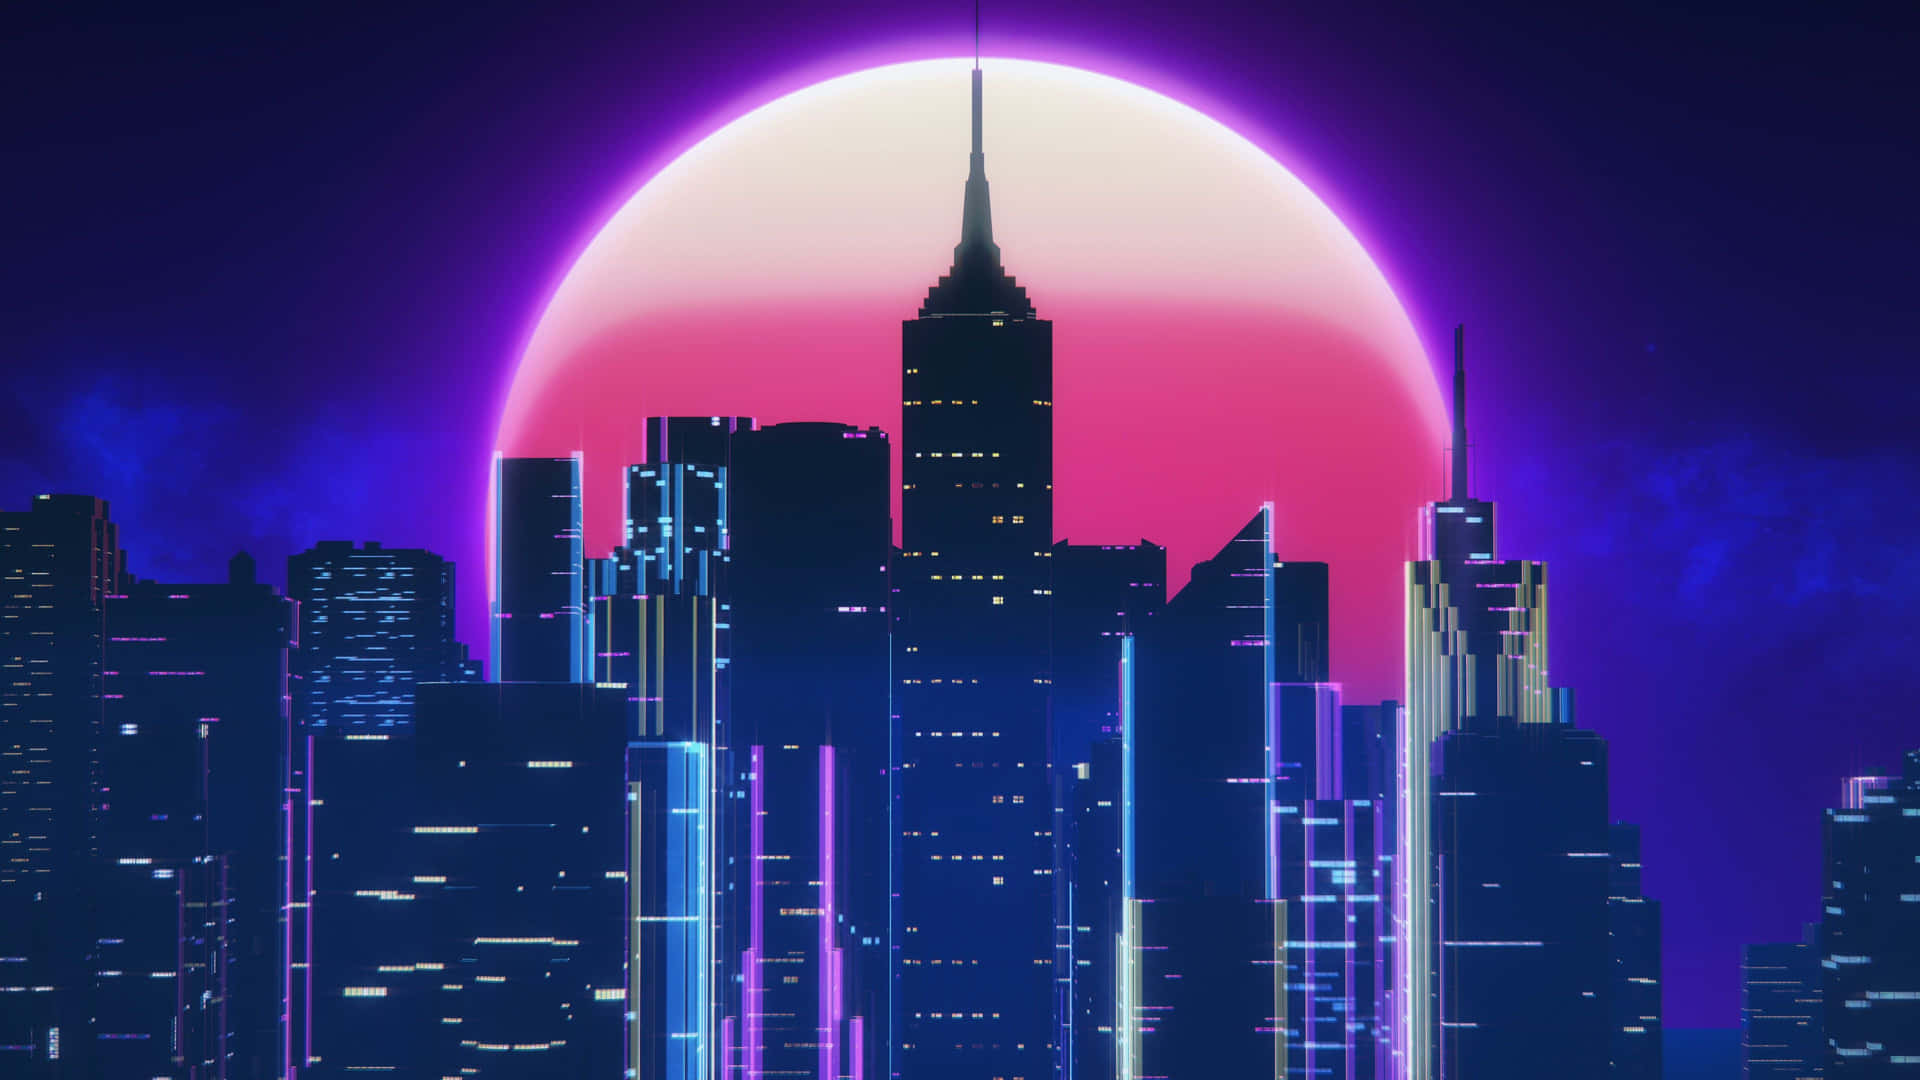 Neon City Background